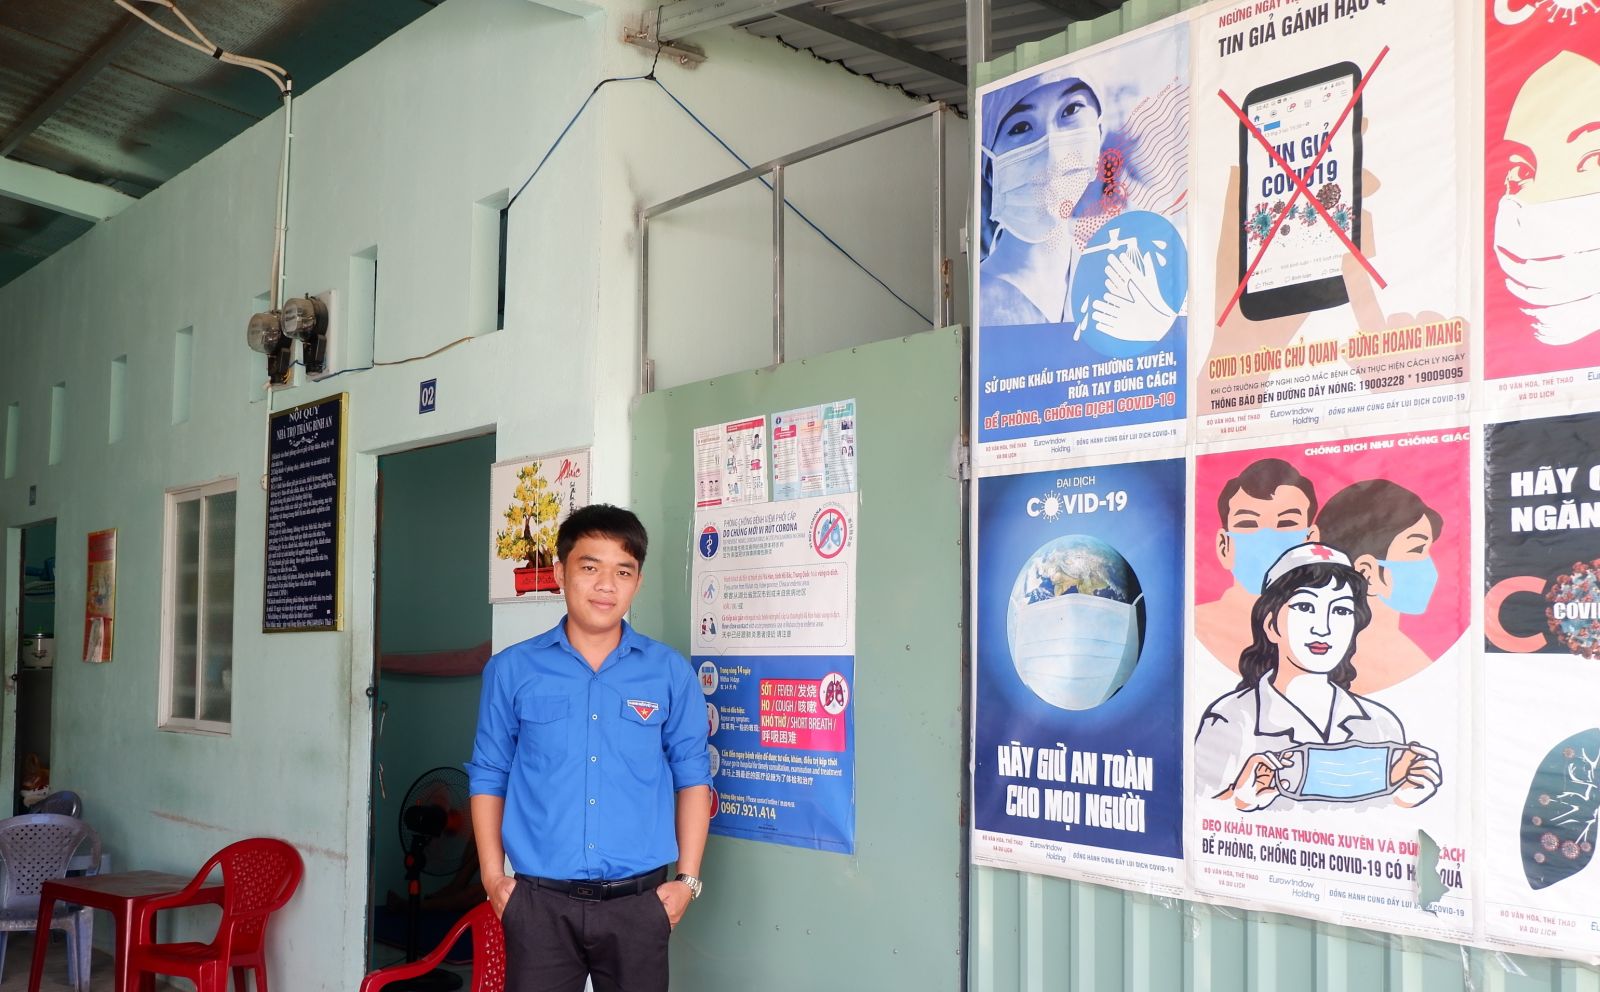 Anh Trần Thông Thái xây dựng nội quy riêng cho nhà trọ và thường xuyên tuyên truyền bằng tranh, để người dân có ý thức bảo vệ sức khỏe